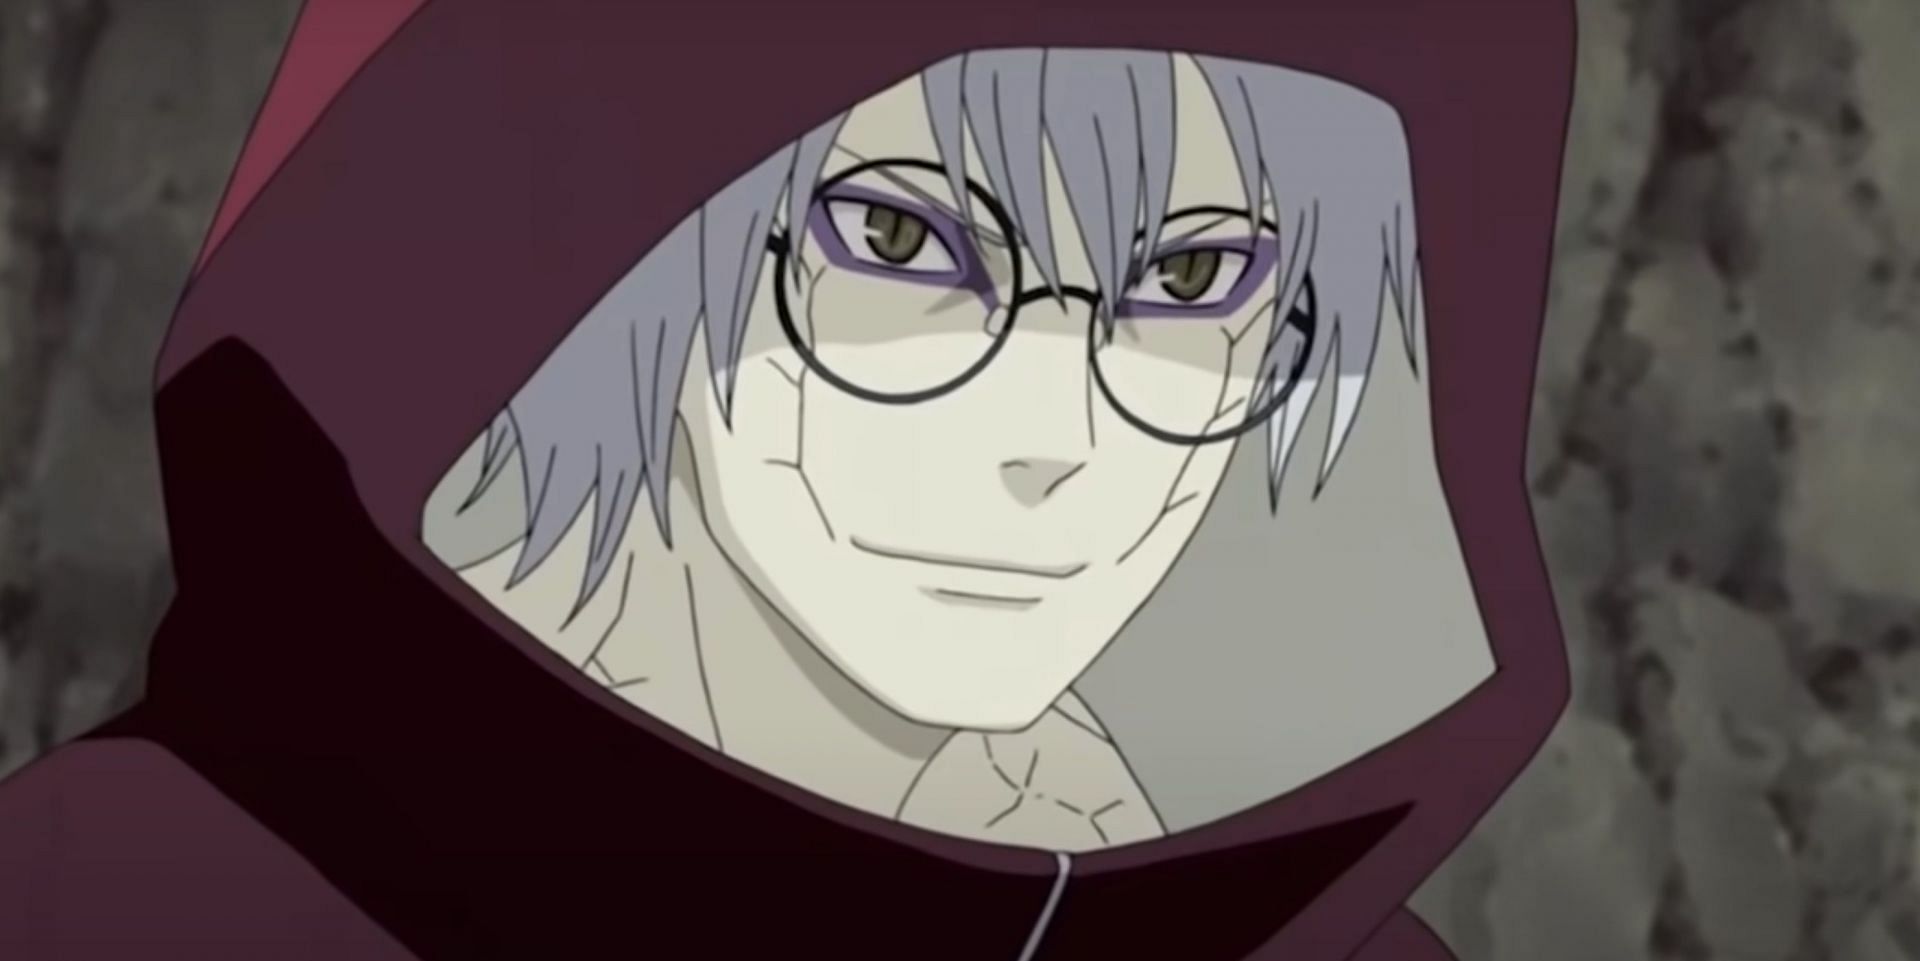 Kabuto Yakushi as seen in anime (Image via Studio Pierrot)